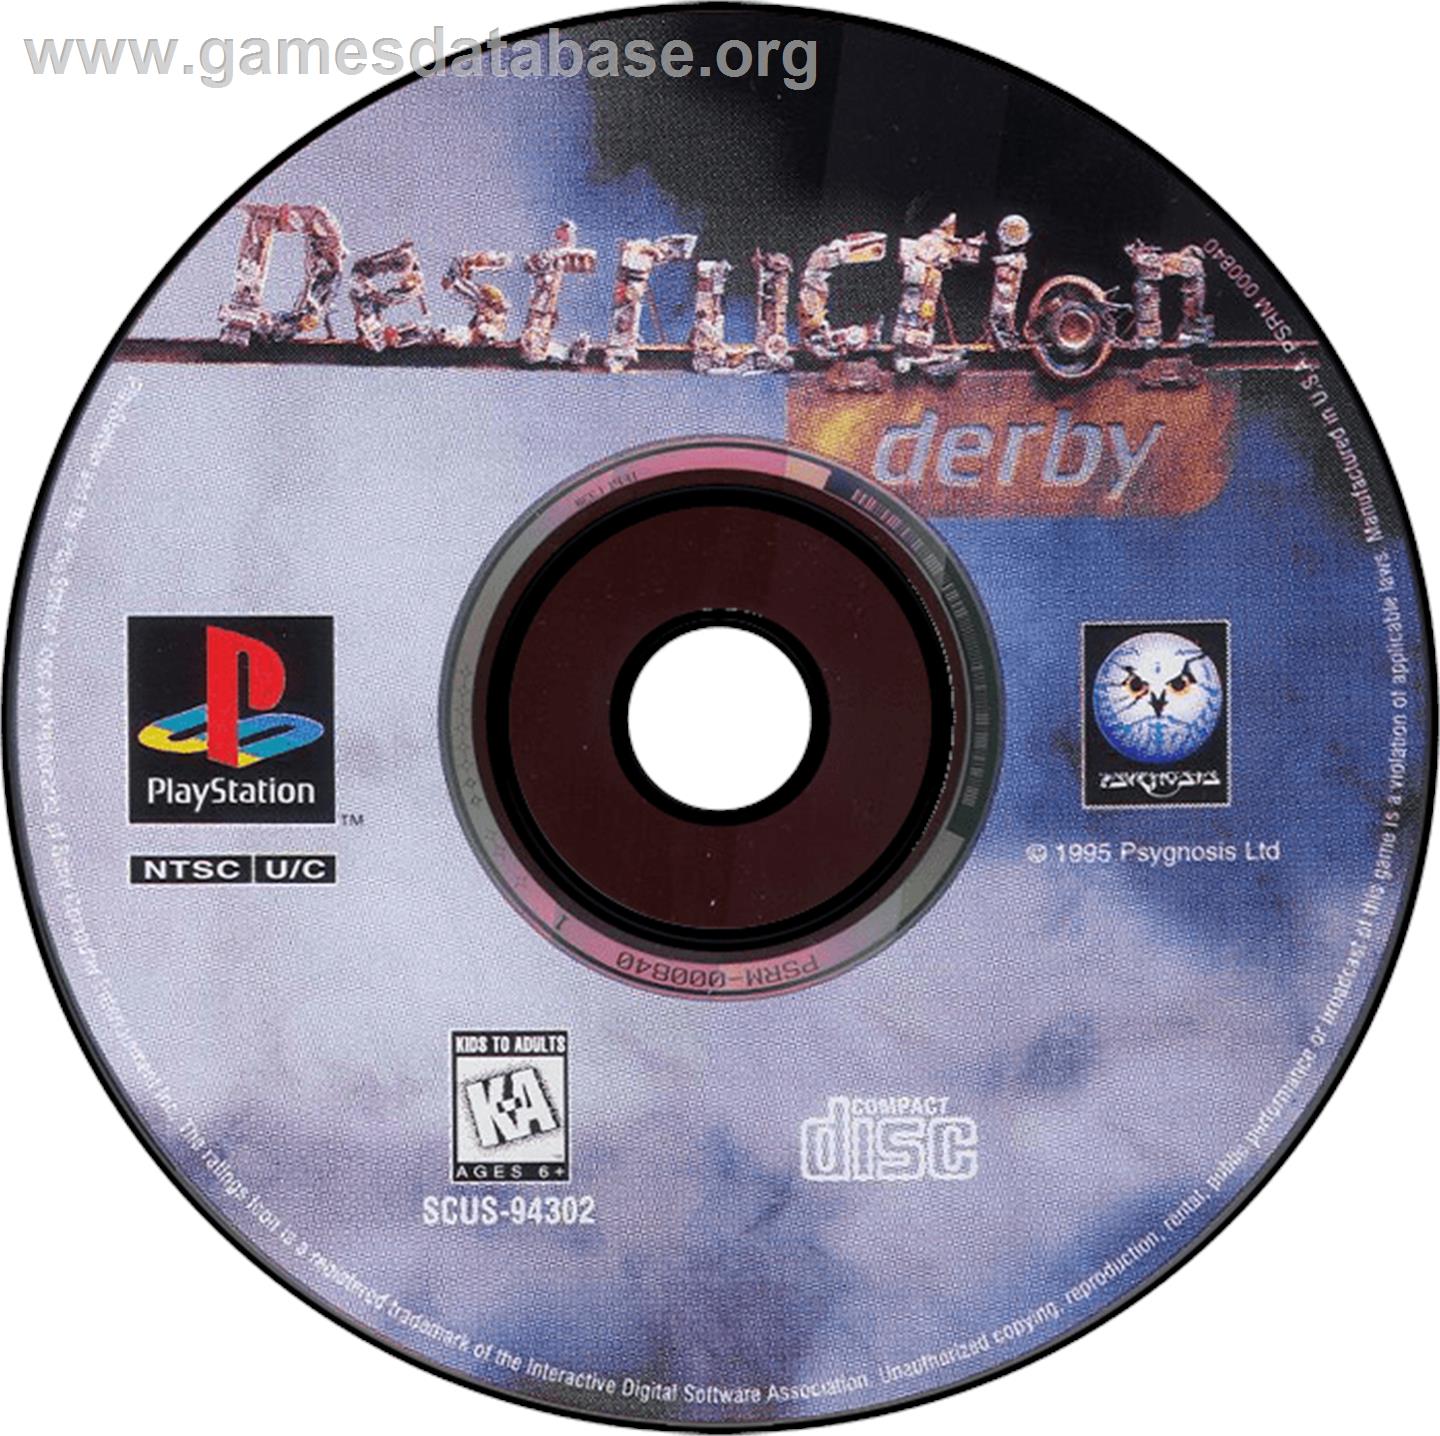 Destruction Derby - Sony Playstation - Artwork - Disc